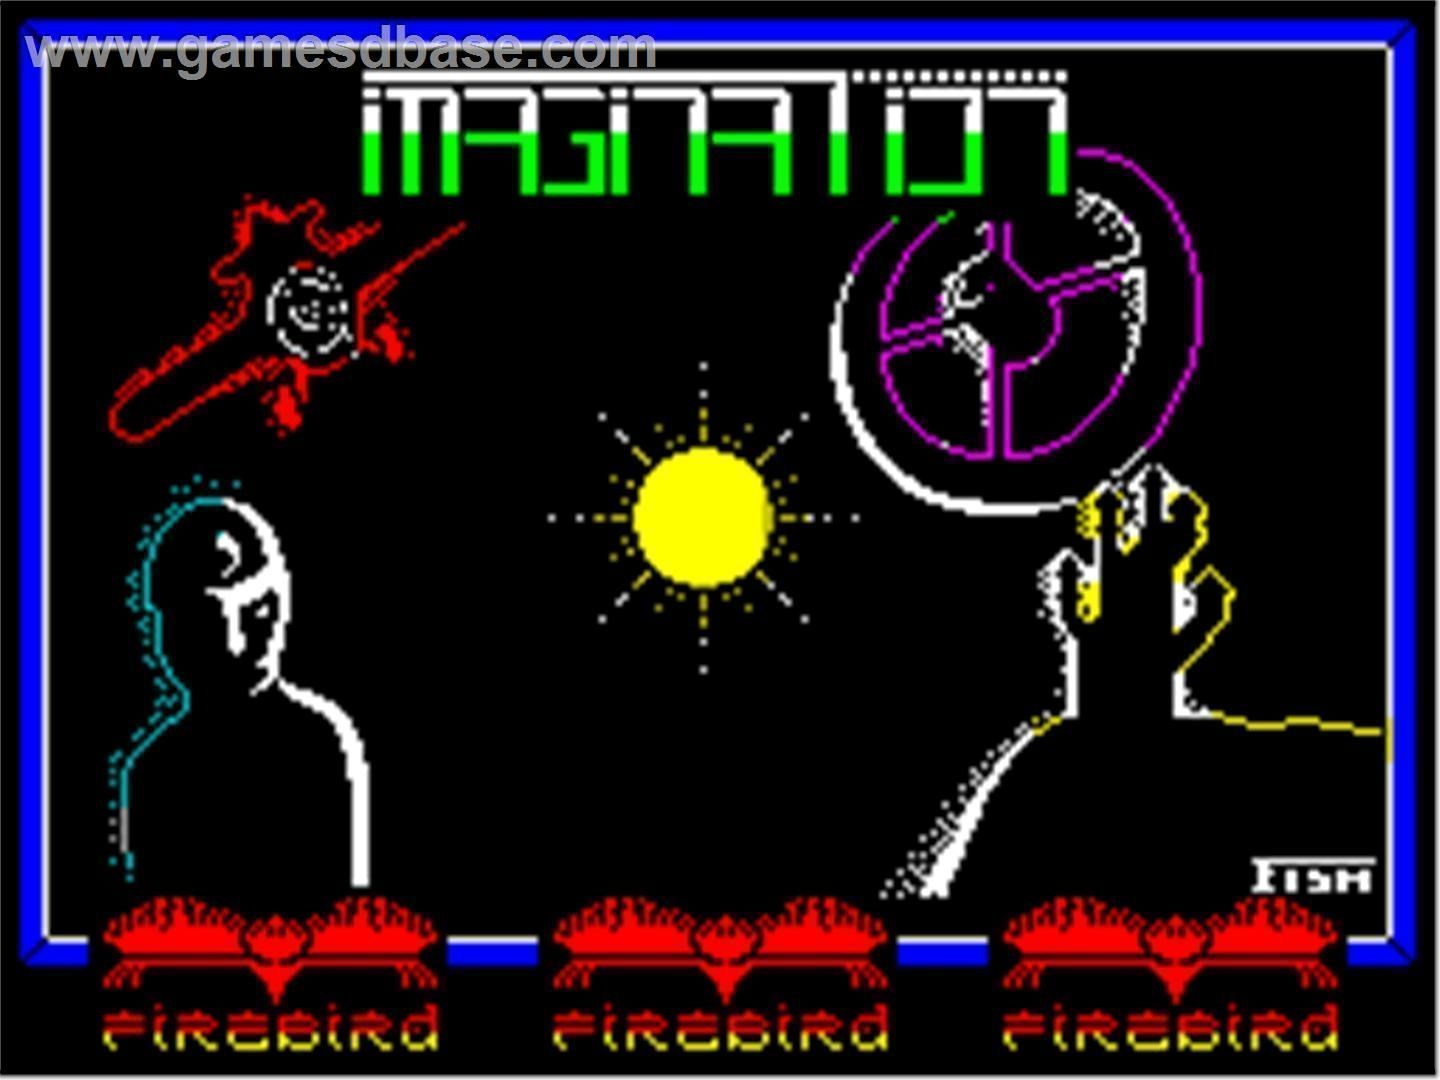 Imagination (1987)(Firebird Software)[a2]